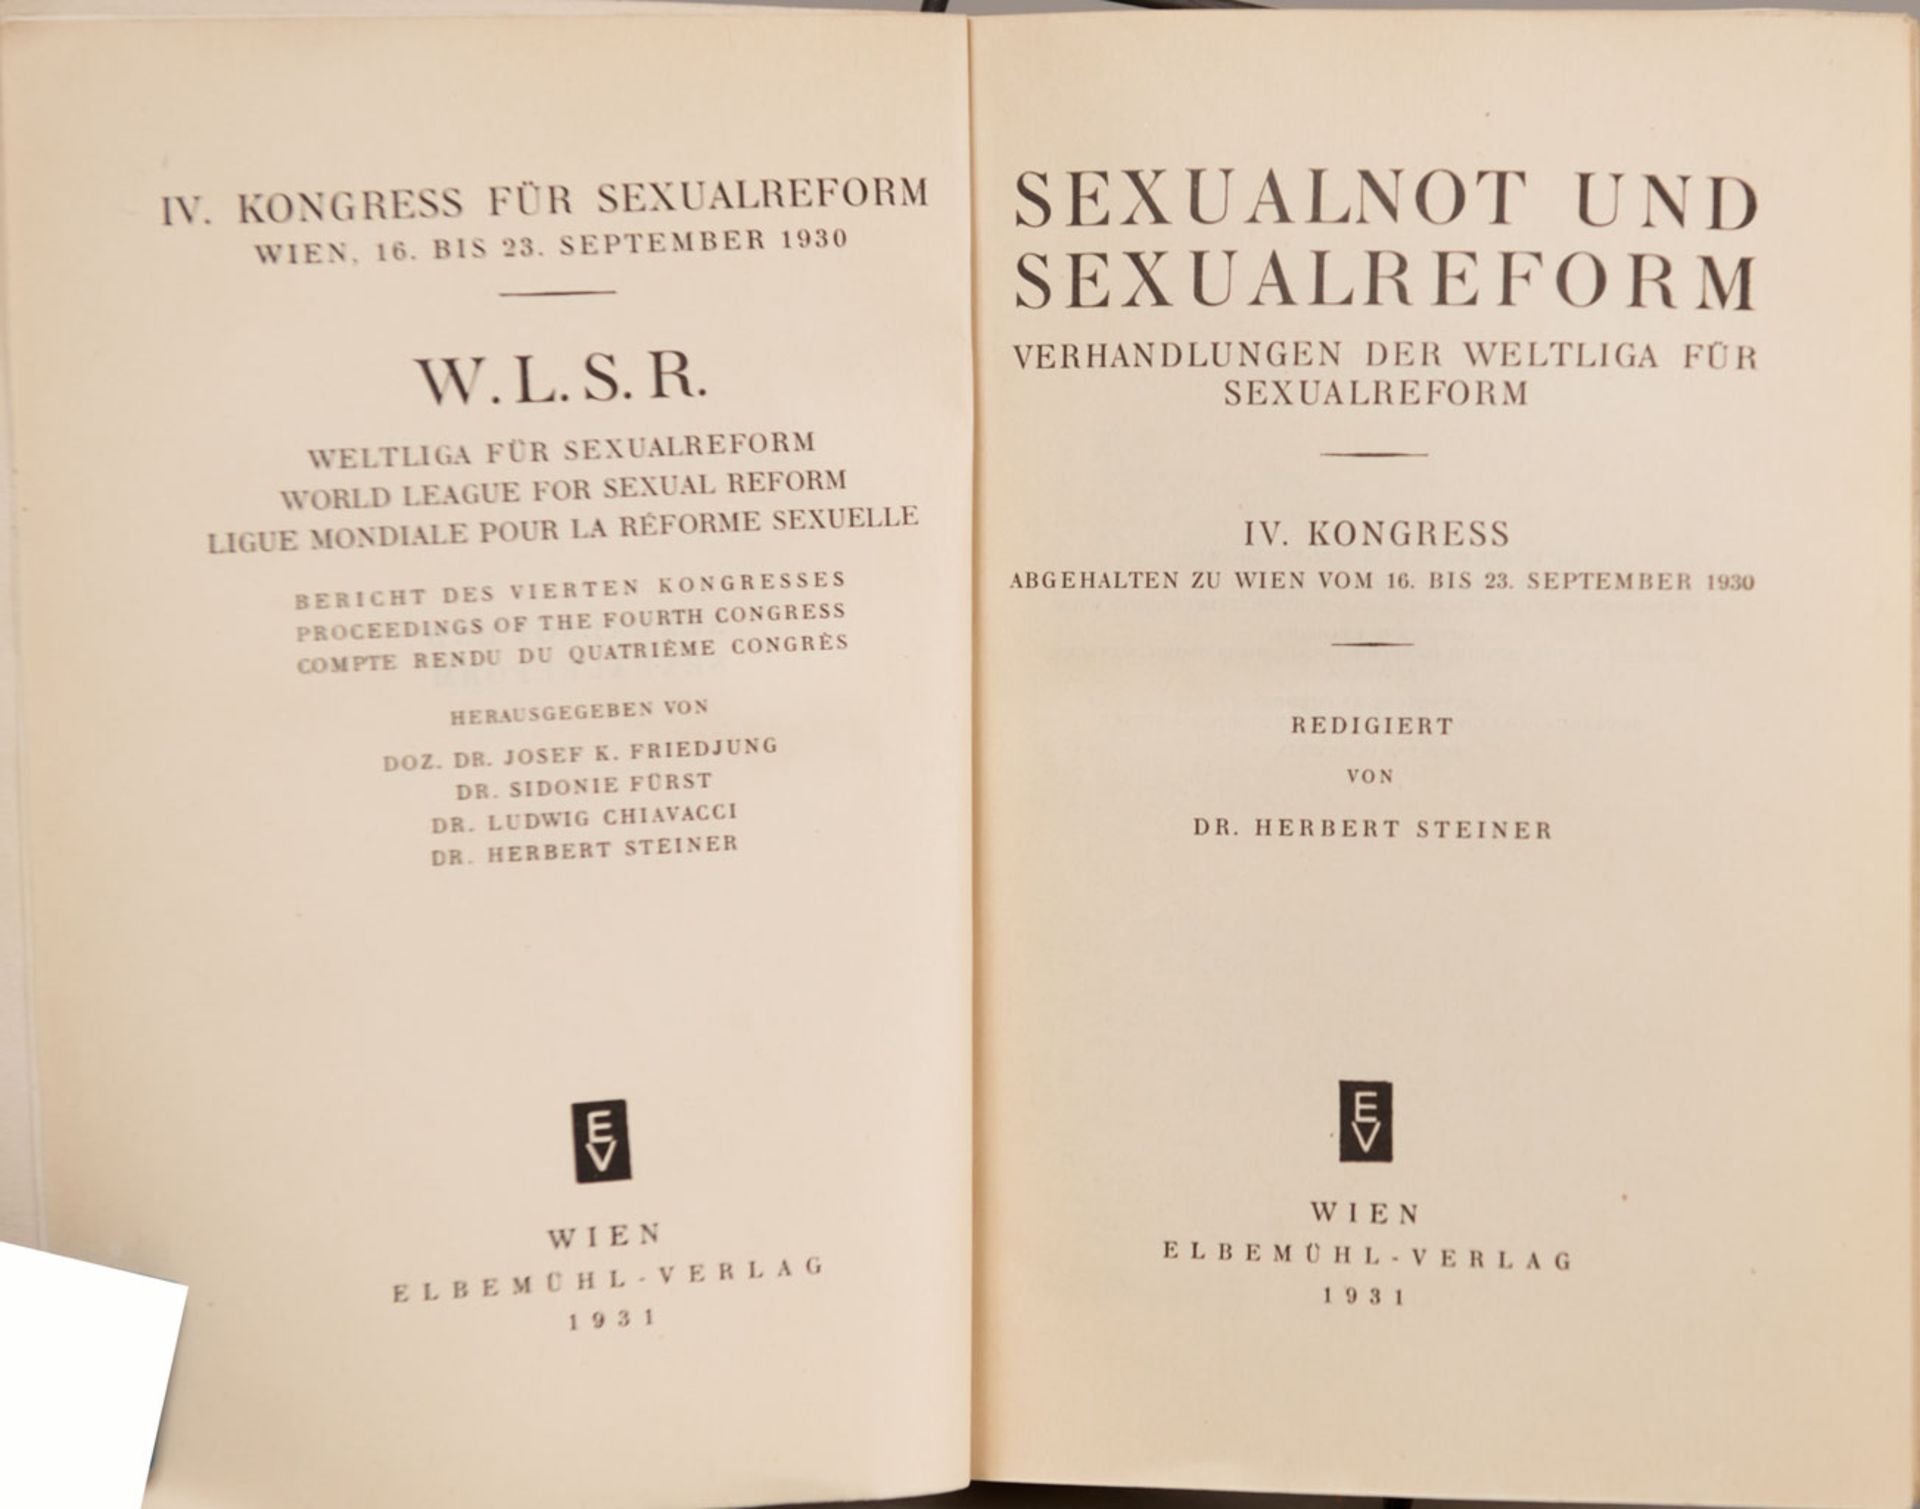 Sexualnot und Sexualreform, Verhandlung der Weltliga für Sexualreform - Image 2 of 2